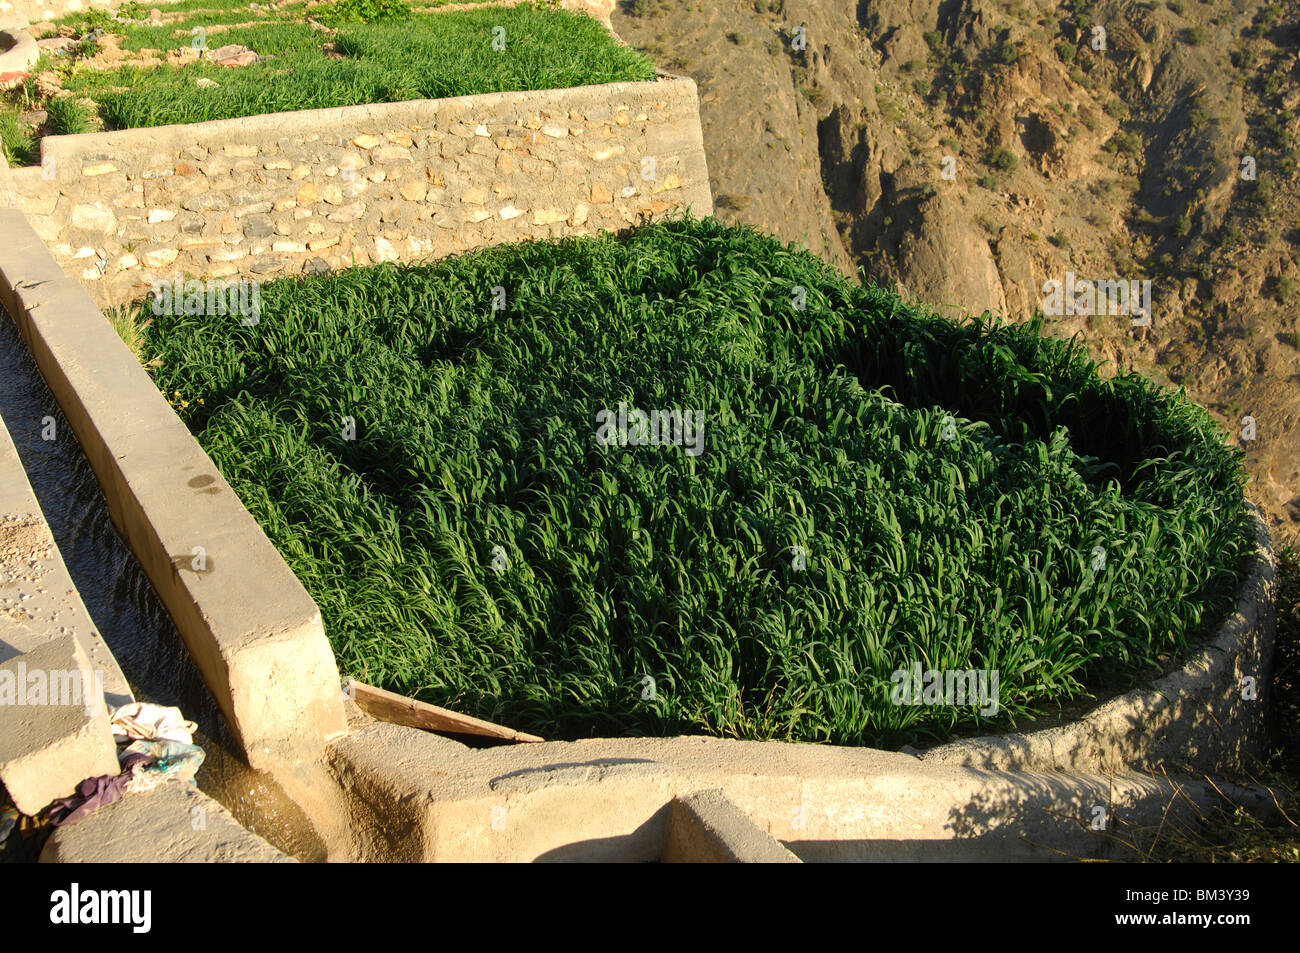 Petit grain terrain dans le village de cendres, Shirayjah Plateau Saiq, Jebel al Alkhdar, Sultanat d'Oman Banque D'Images